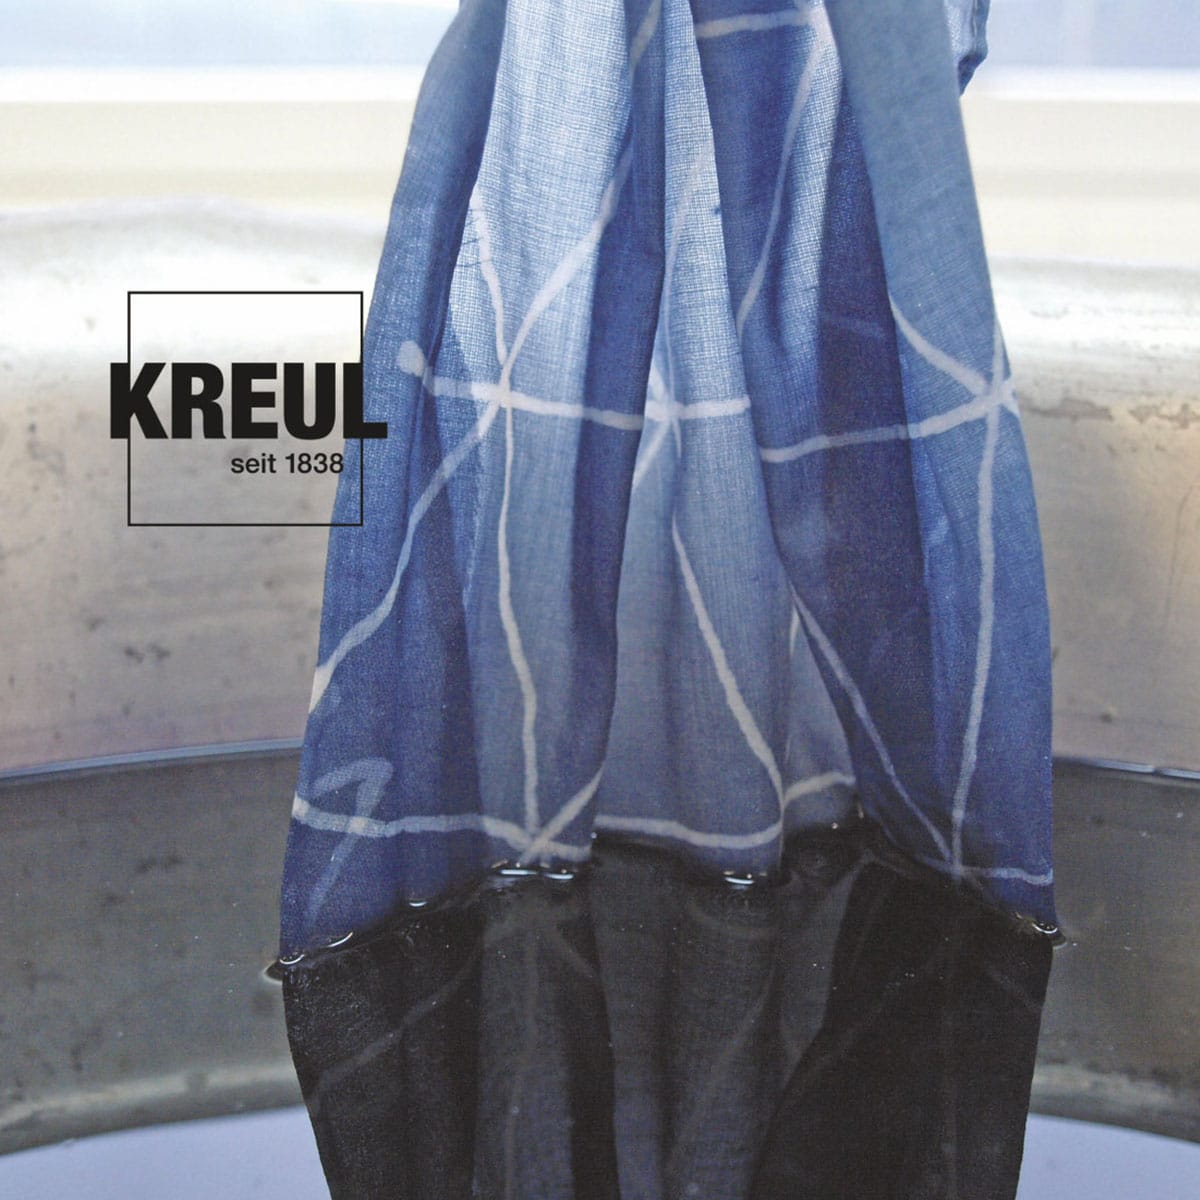 Kreul Javana Fixateur pour peintures textiles batik Verre 20 ml